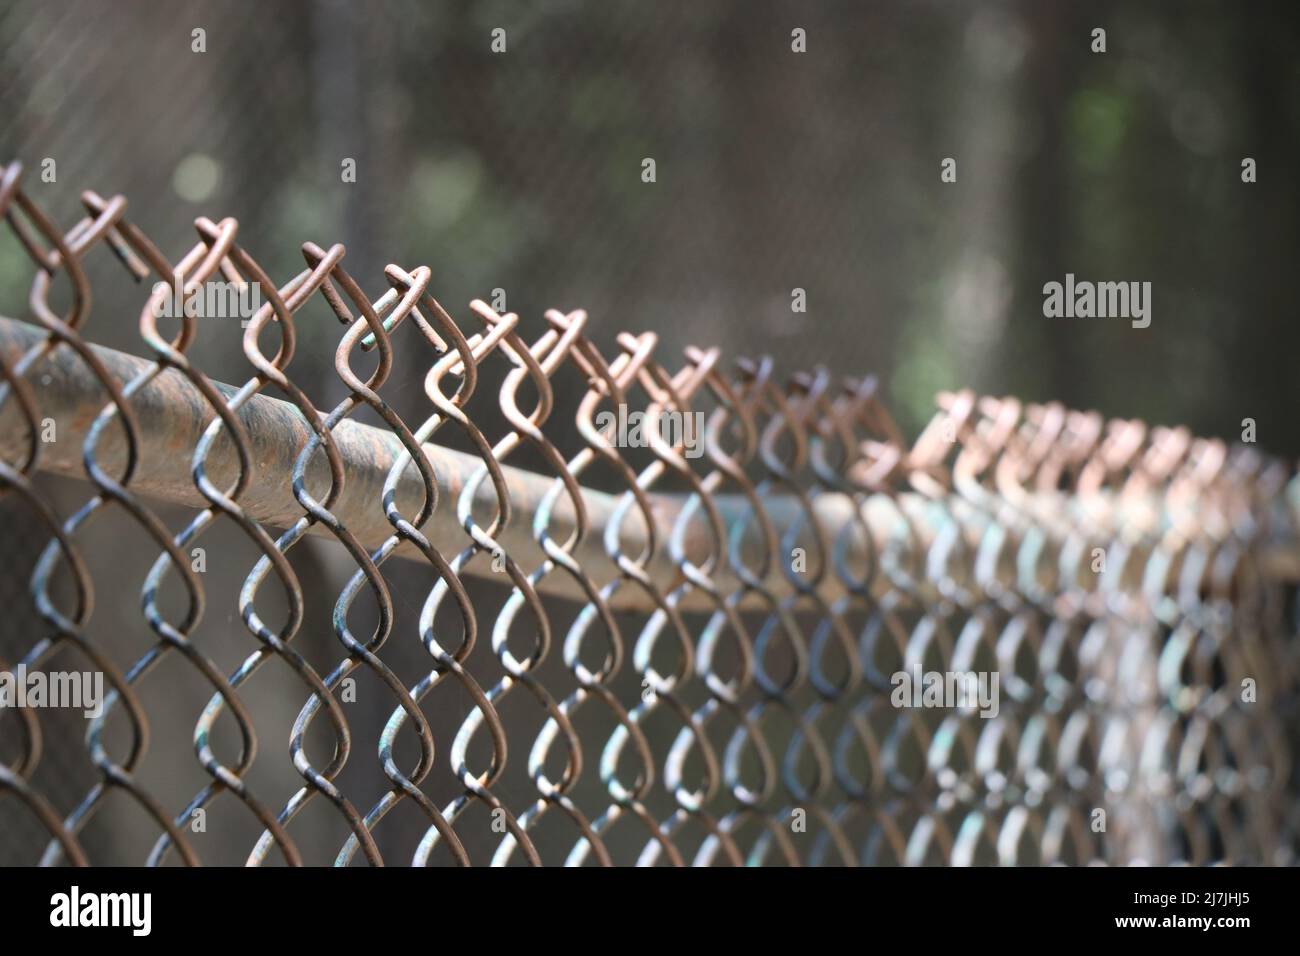 Vue rapprochée d'une clôture protégeant une propriété. Clôture à maillons de chaîne avec fil barbelé et poutres de lumière du soleil Banque D'Images